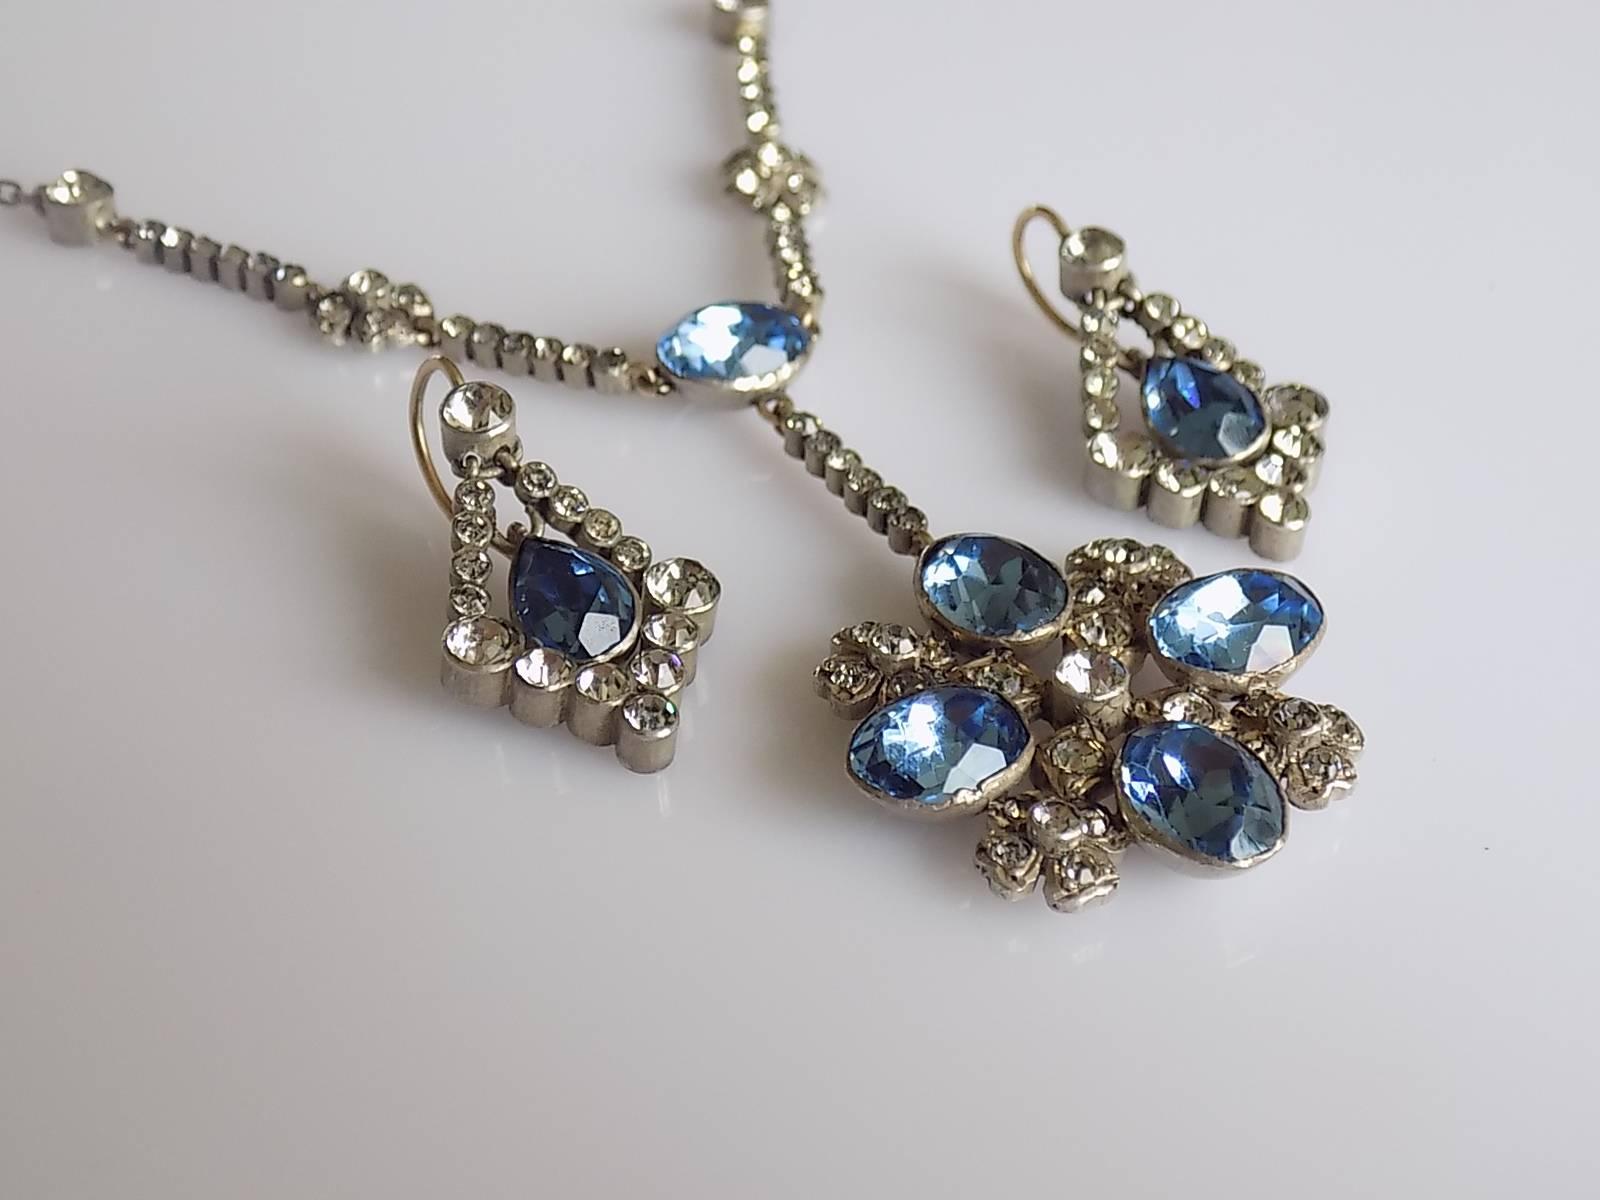 Georgian Edwardian Gold Silver Paste Earrings Necklace Set